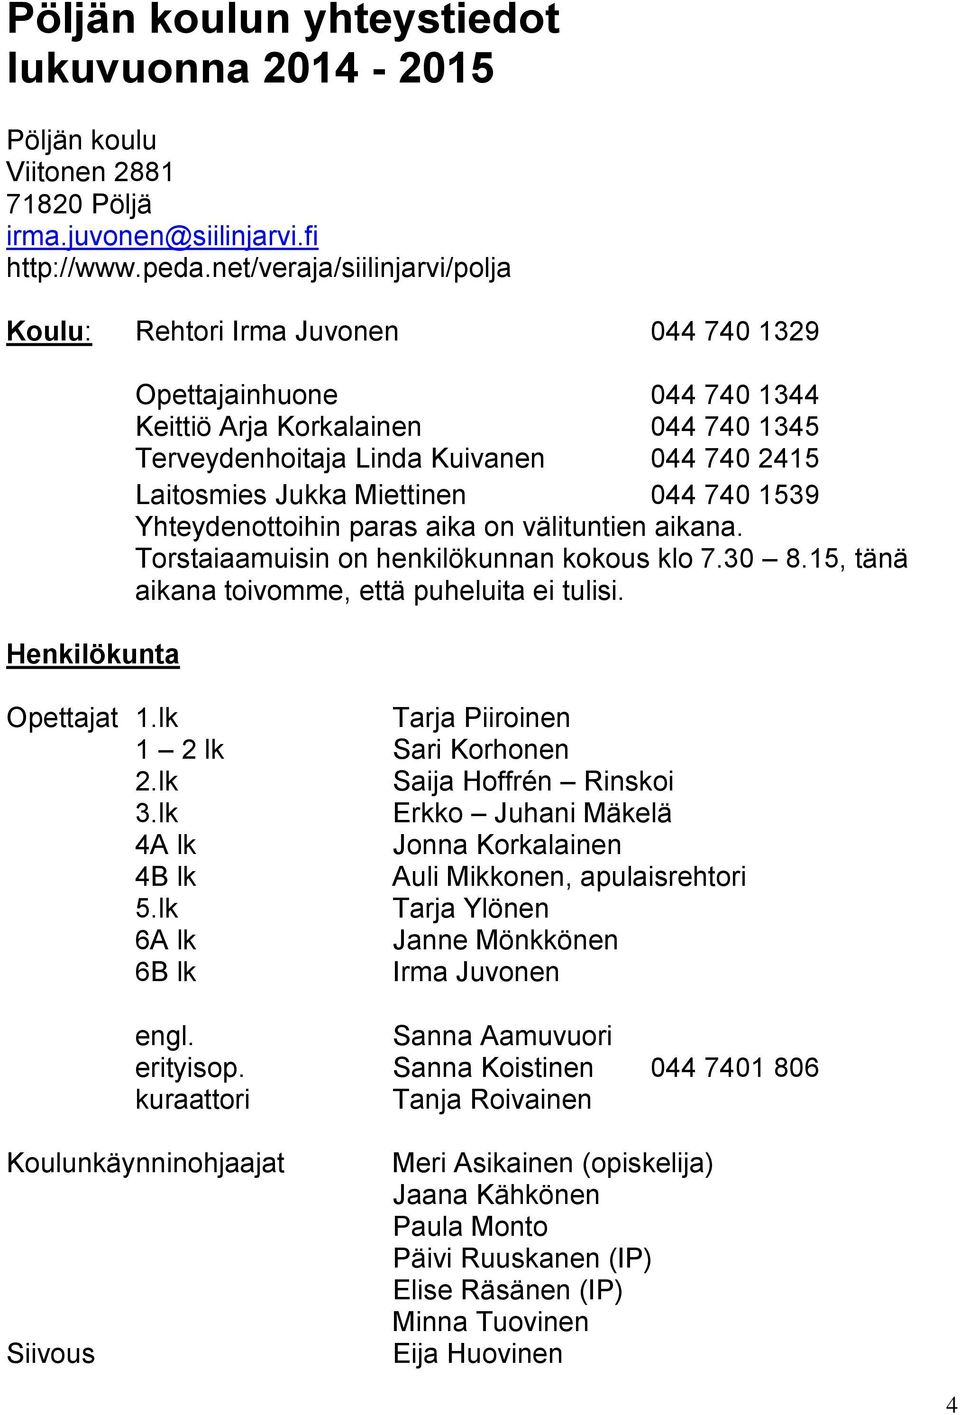 Laitosmies Jukka Miettinen 044 740 1539 Yhteydenottoihin paras aika on välituntien aikana. Torstaiaamuisin on henkilökunnan kokous klo 7.30 8.15, tänä aikana toivomme, että puheluita ei tulisi.